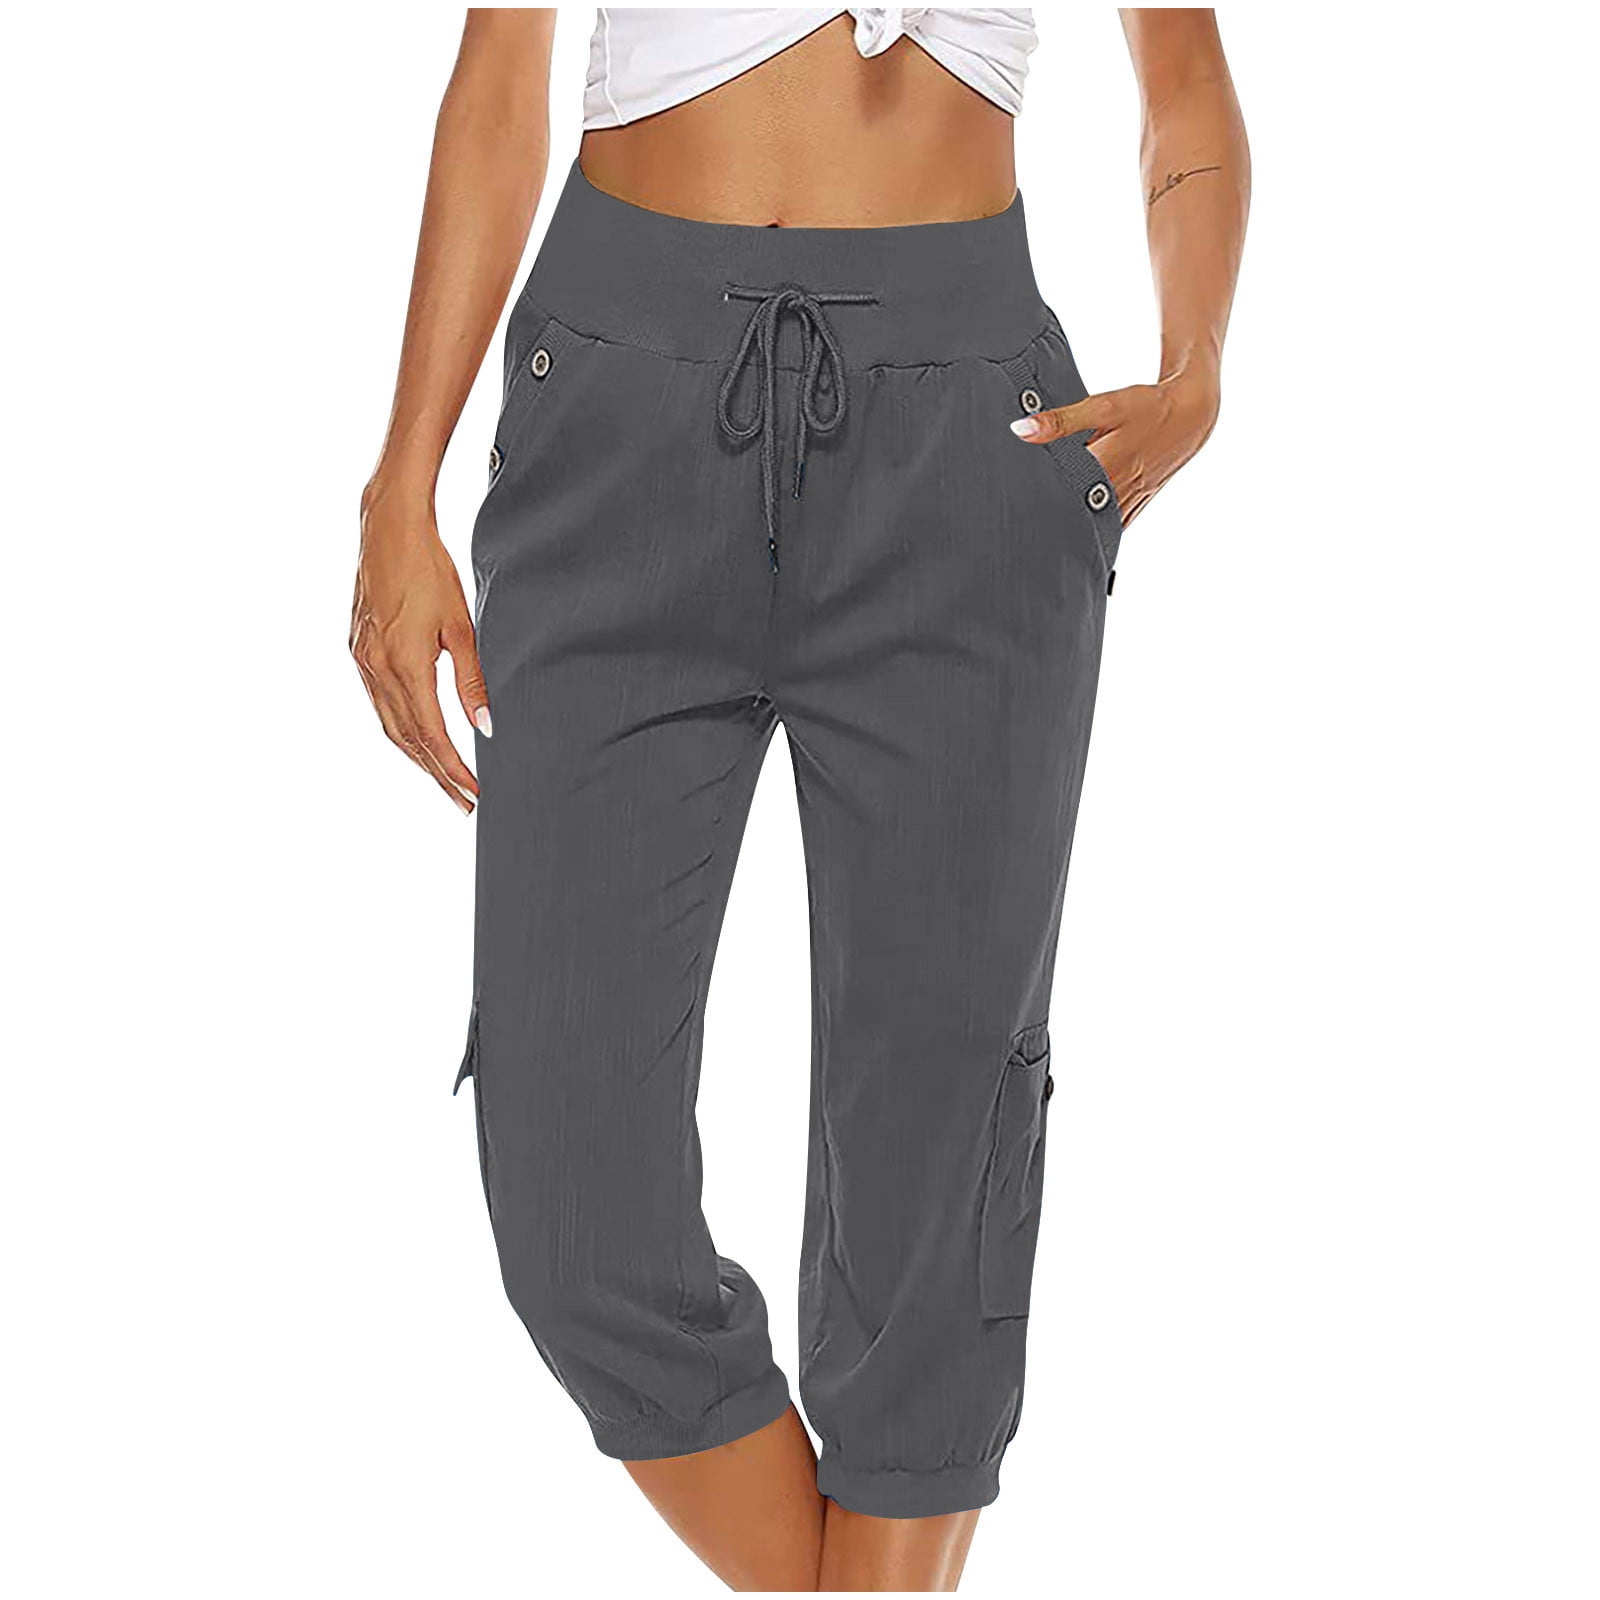 Capri Pants for Women Cotton Linen Plus Size Cargo Pants Capris Elastic  High Waisted 3/4 Slacks with Multi Pockets (X-Large, Wine) 